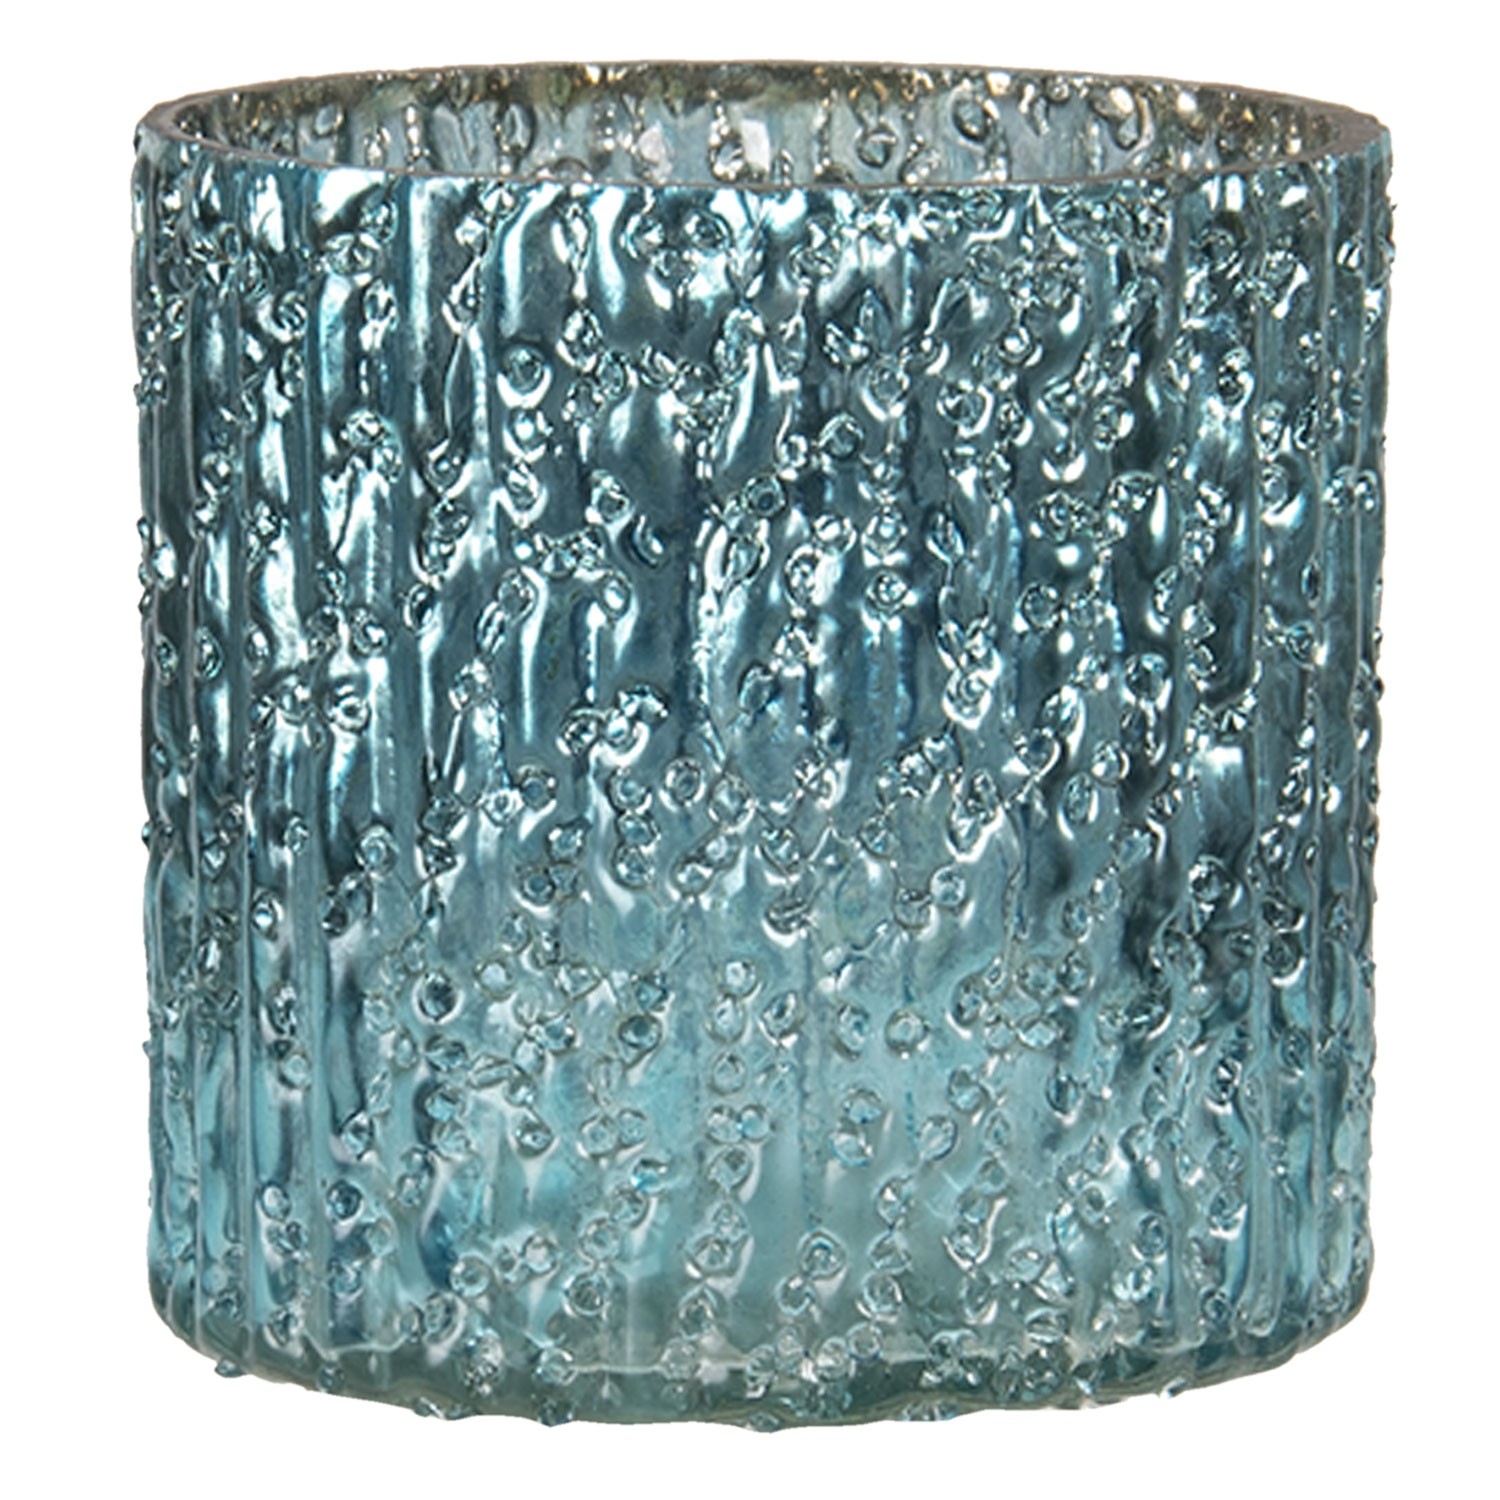 Modrý skleněný svícen Blavy S - Ø 8*8 cm Clayre & Eef